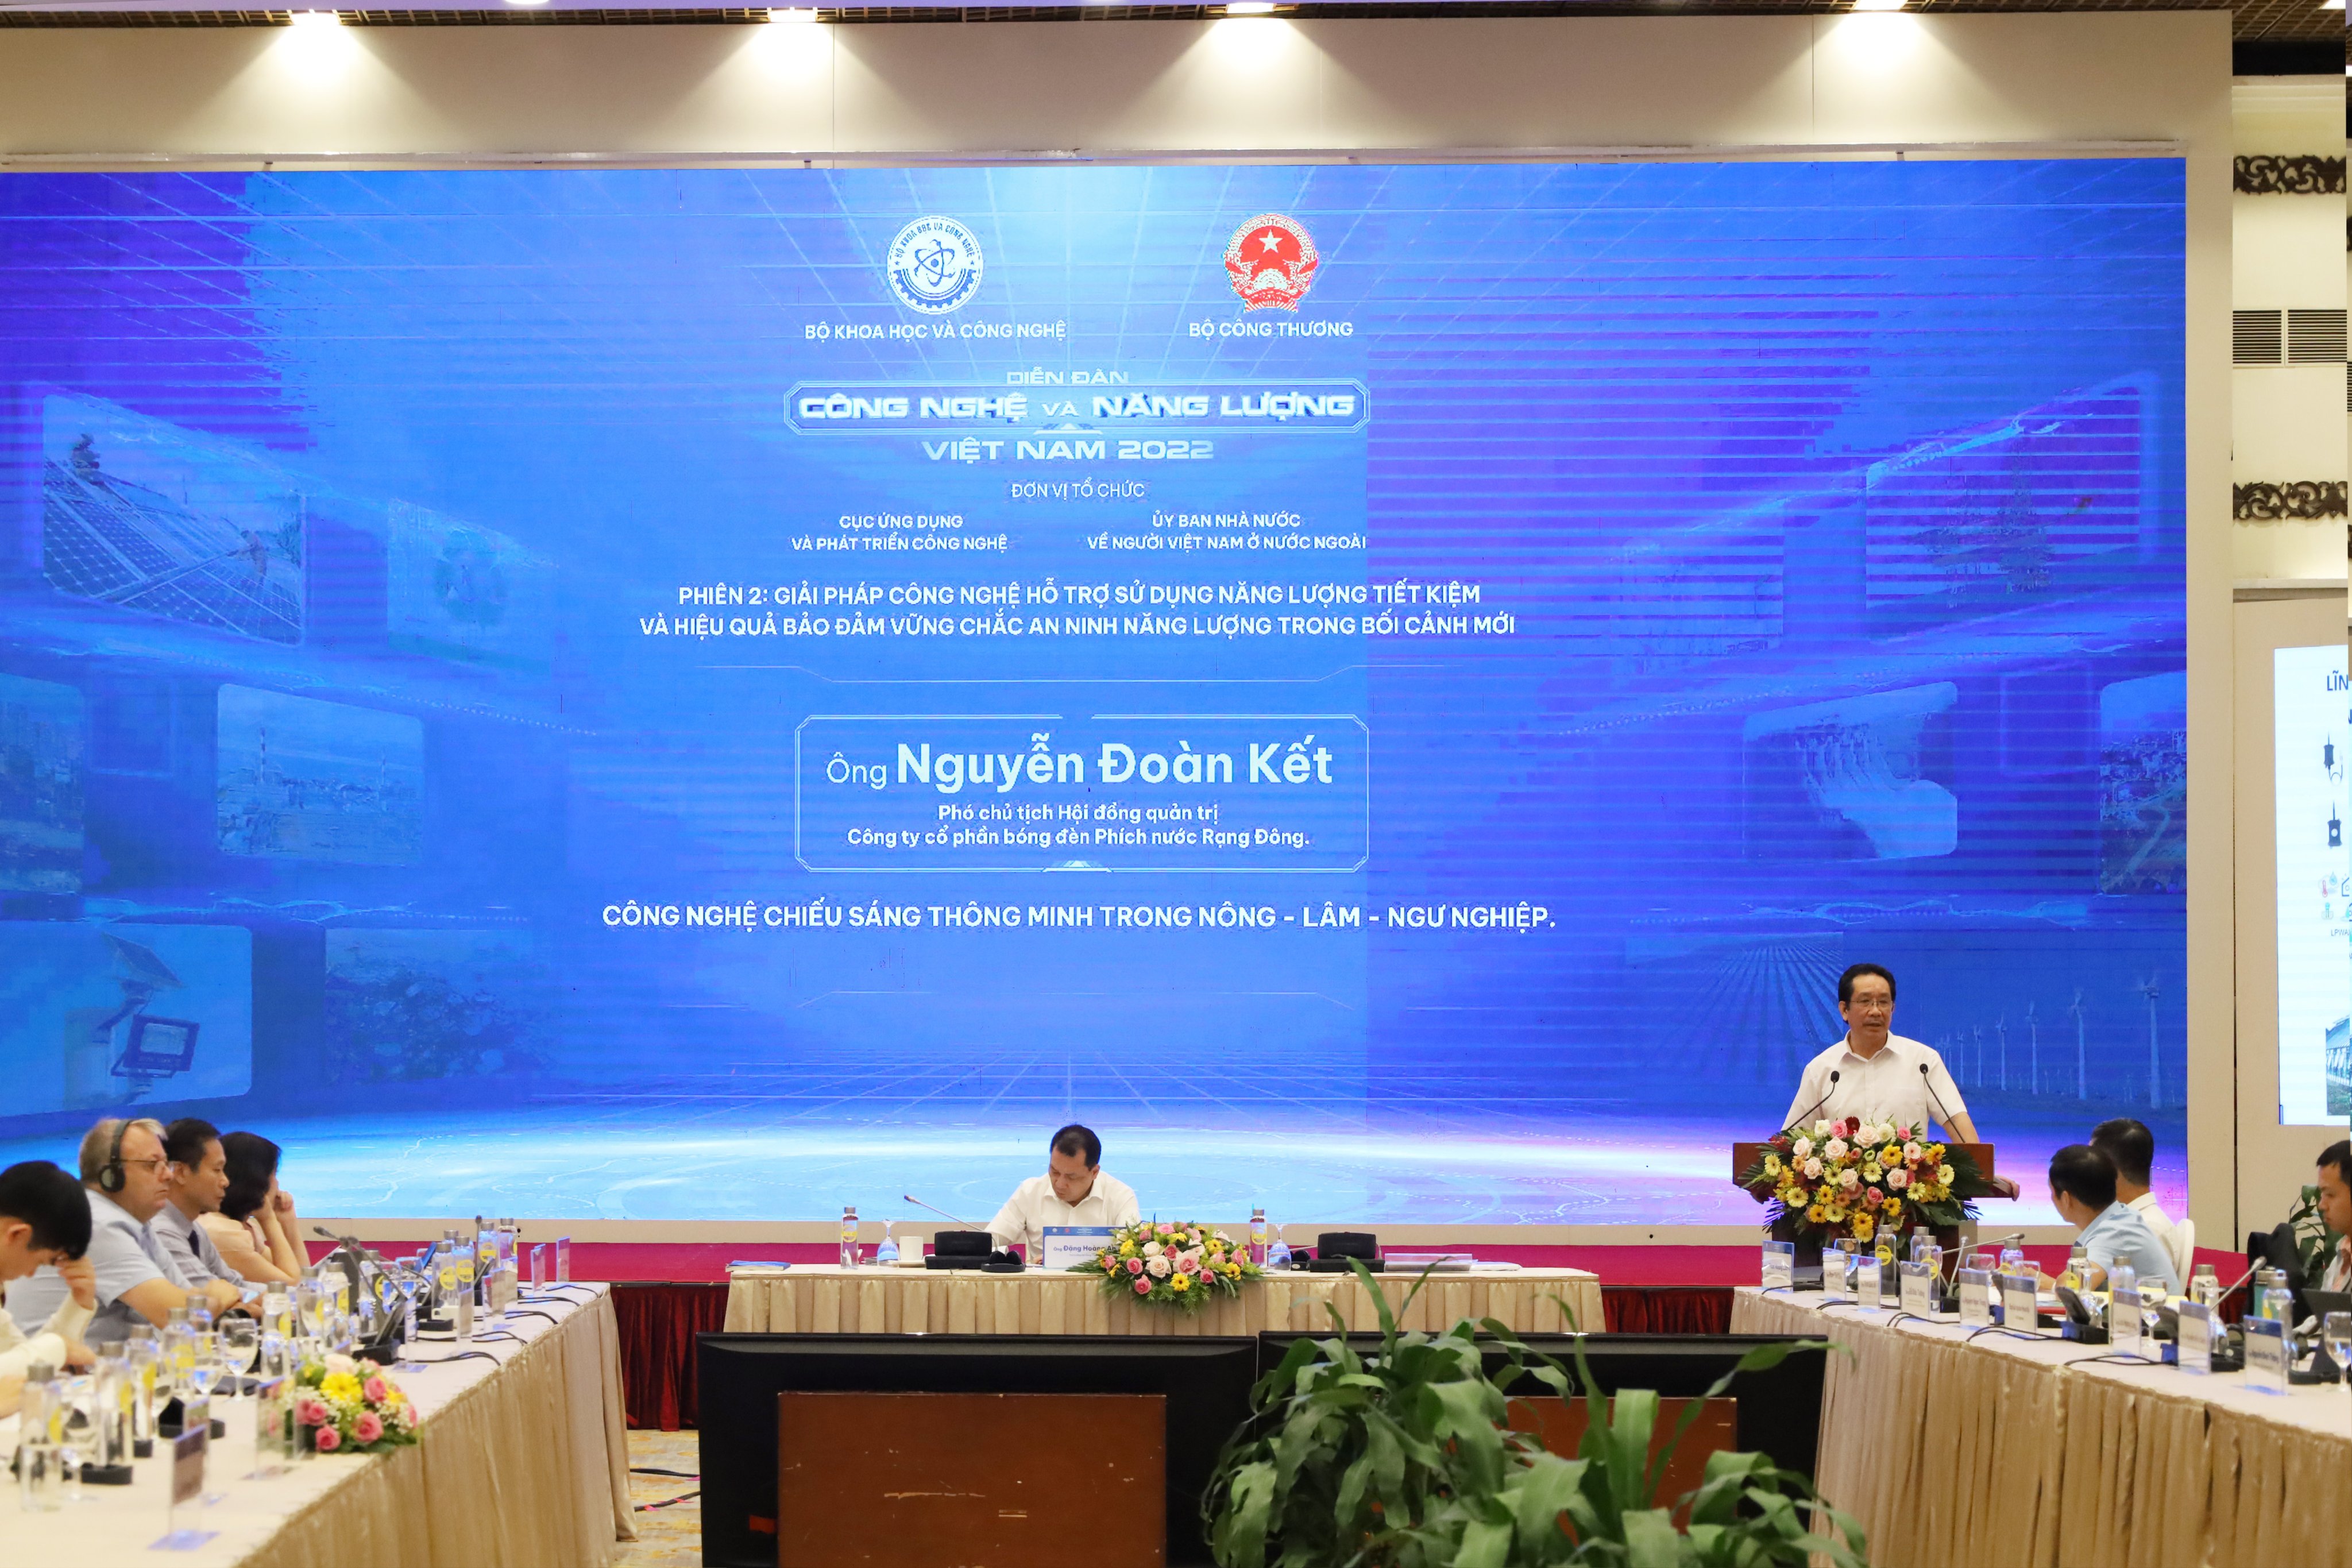 Rạng Đông tham dự Diễn đàn Công nghệ và Năng lượng Việt Nam 2022